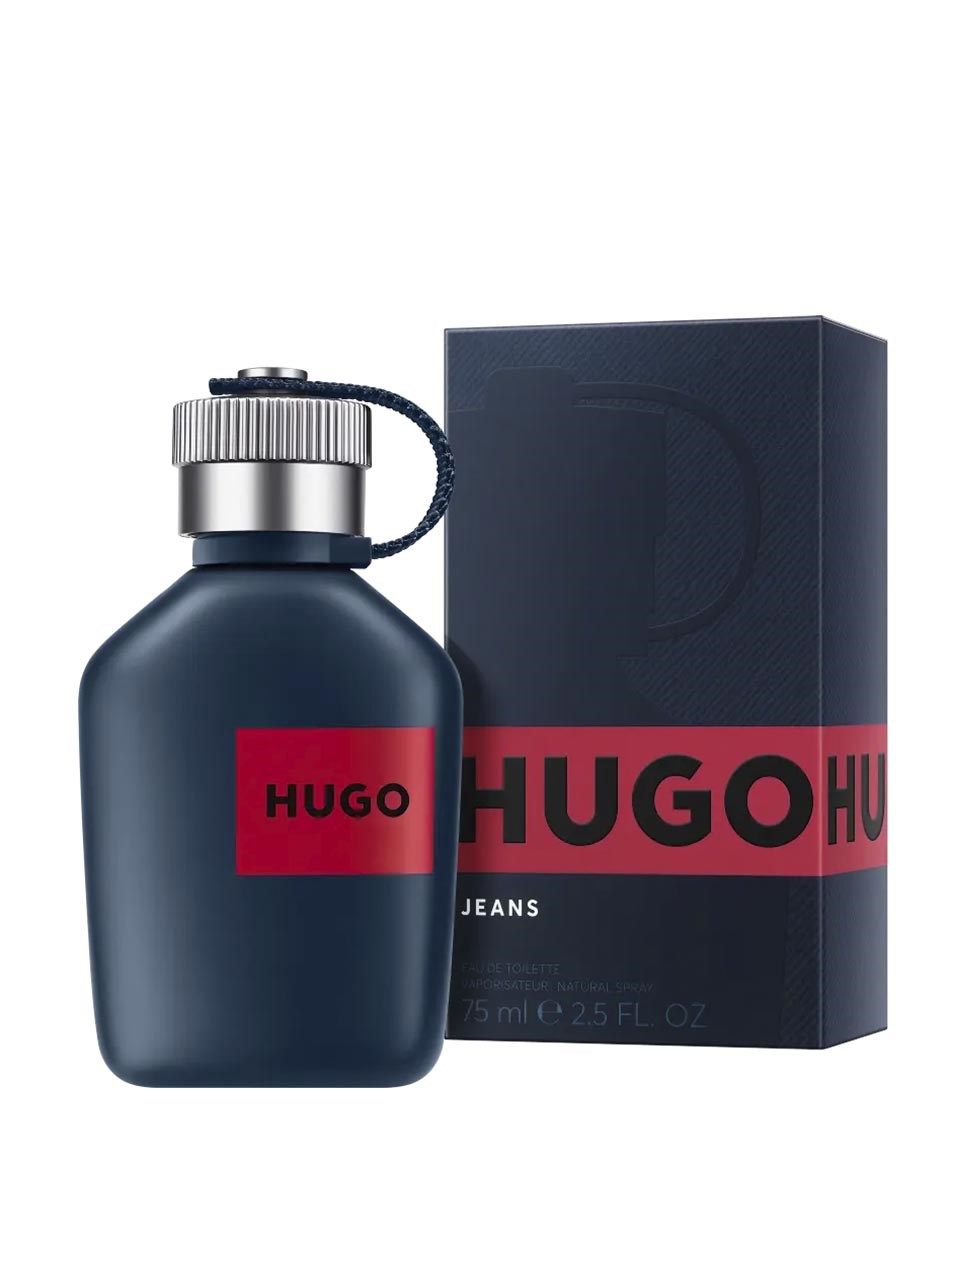 Hugo Jeans Eau de Toilette 75 ml